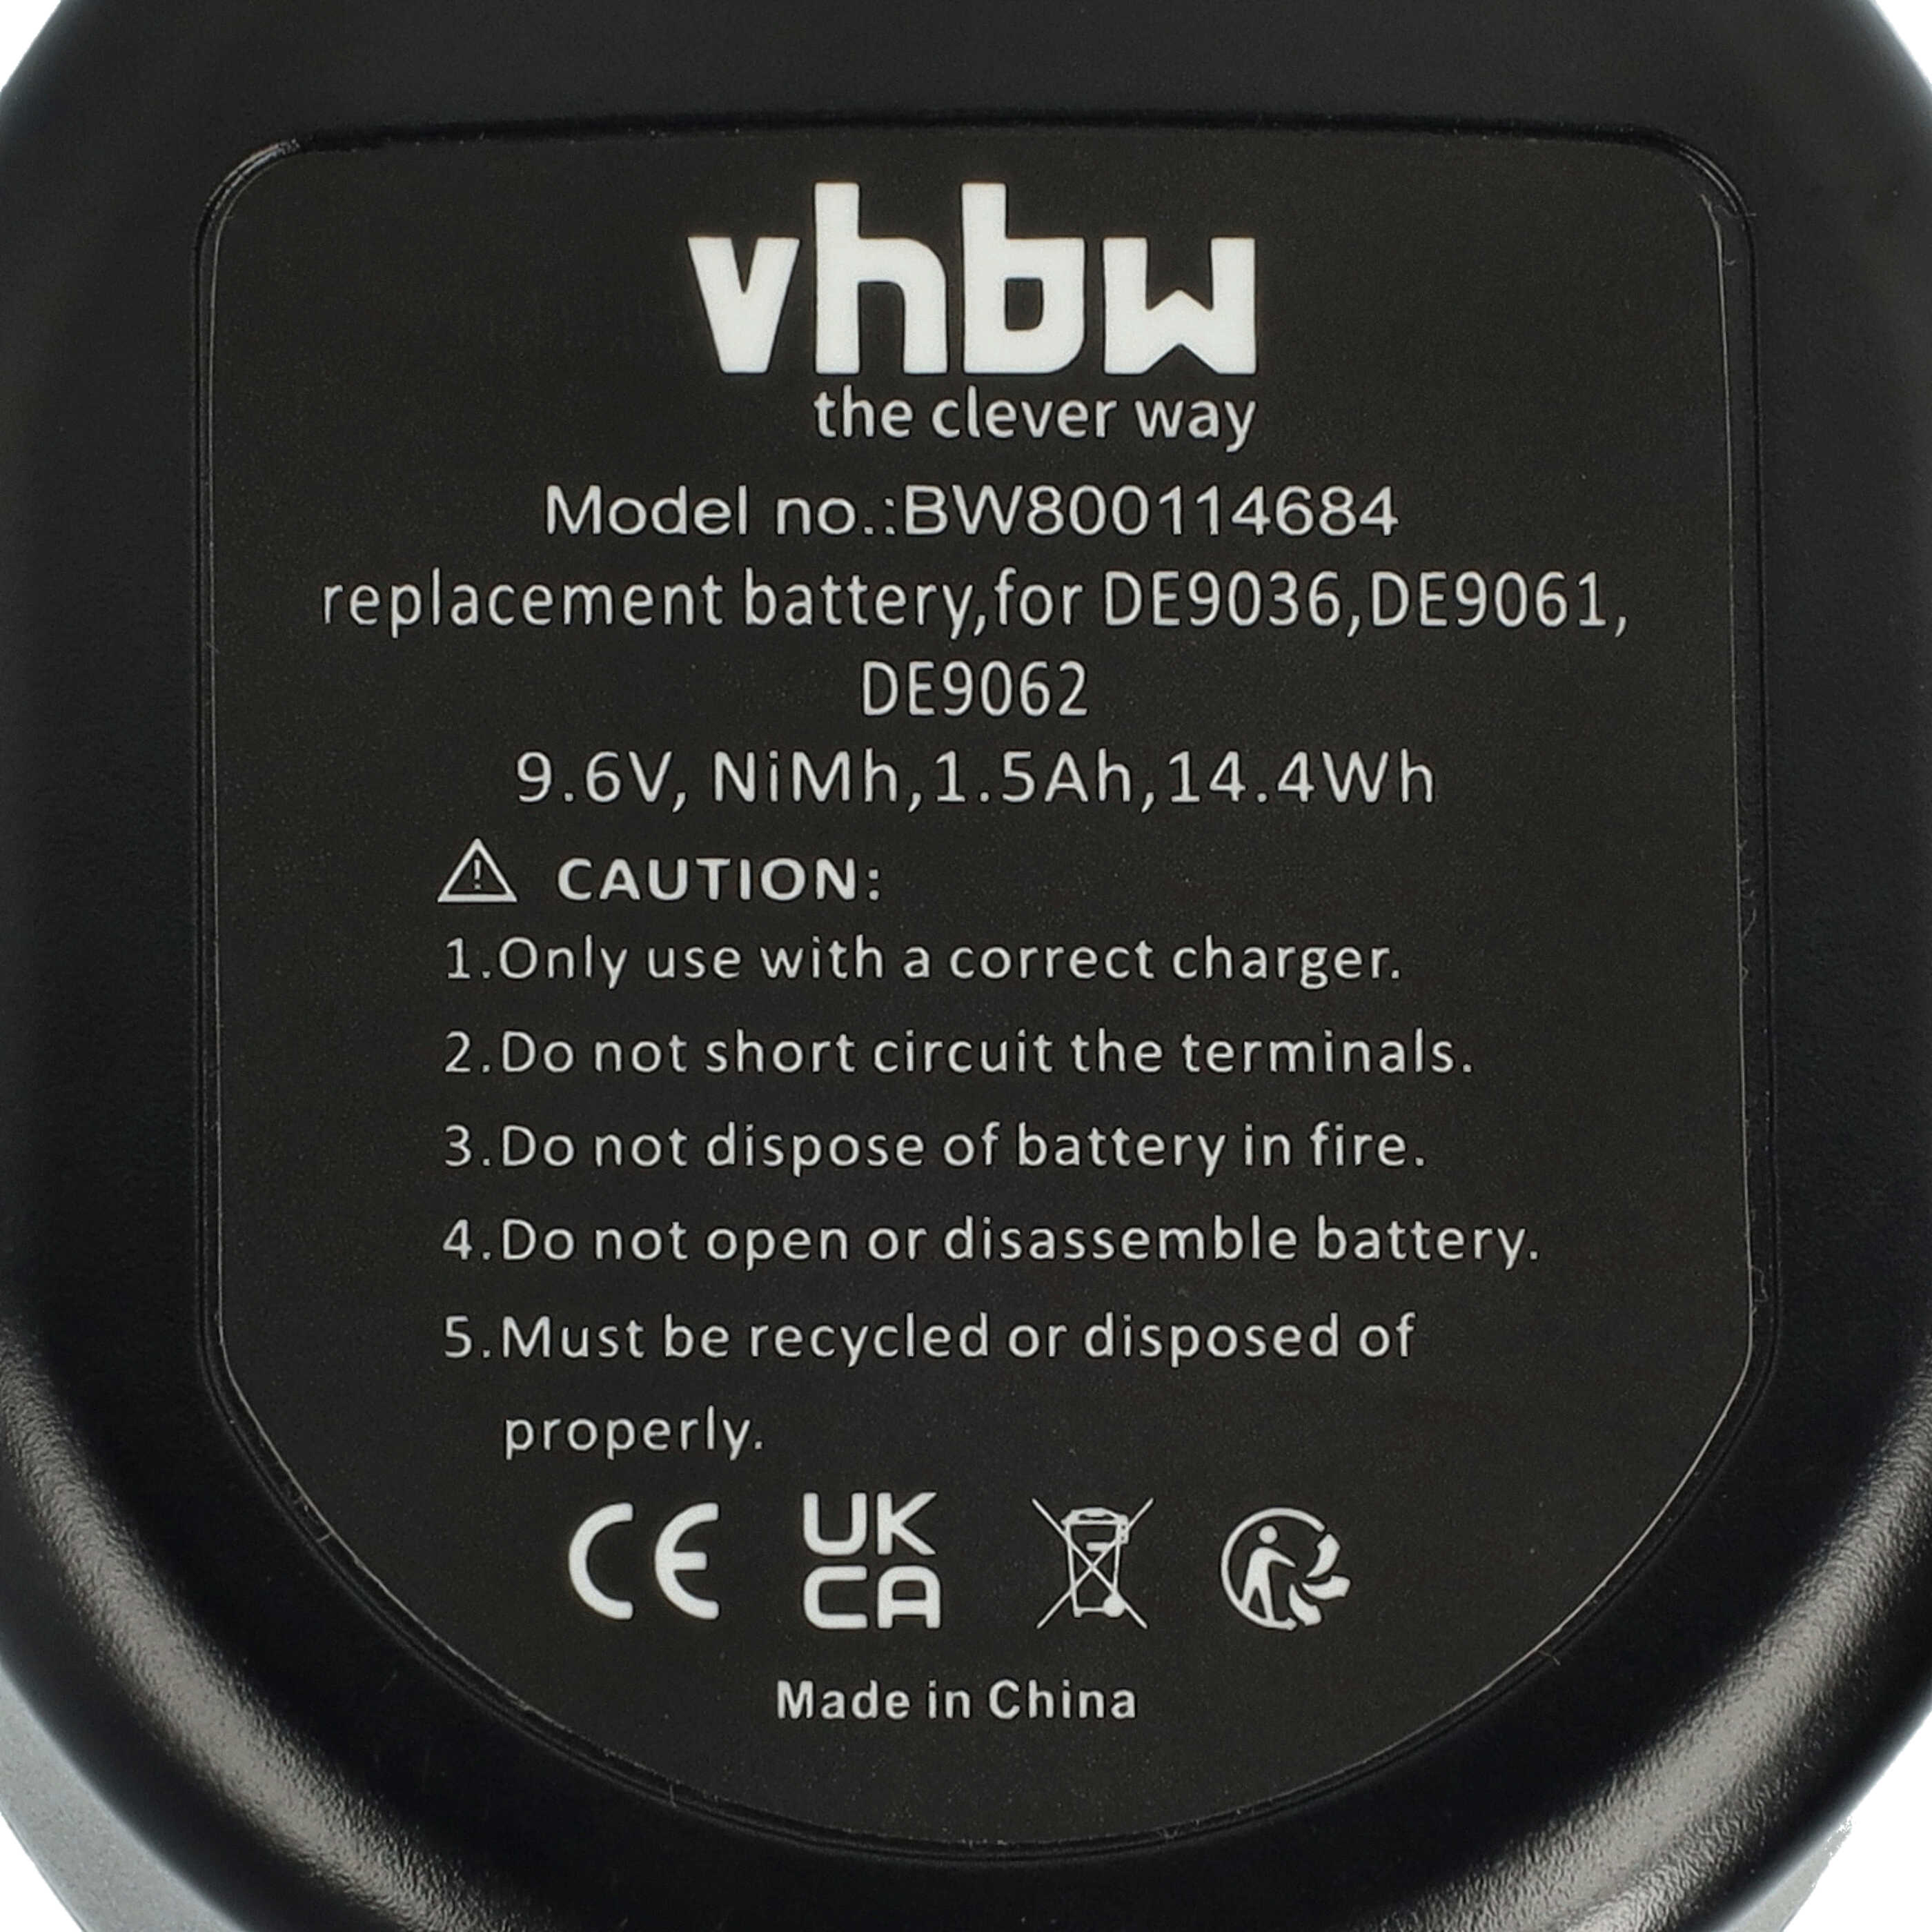 Batterie remplace Black & Decker A9242, A9251, A9265, A9272 pour outil électrique - 1500 mAh, 9,6 V, NiMH